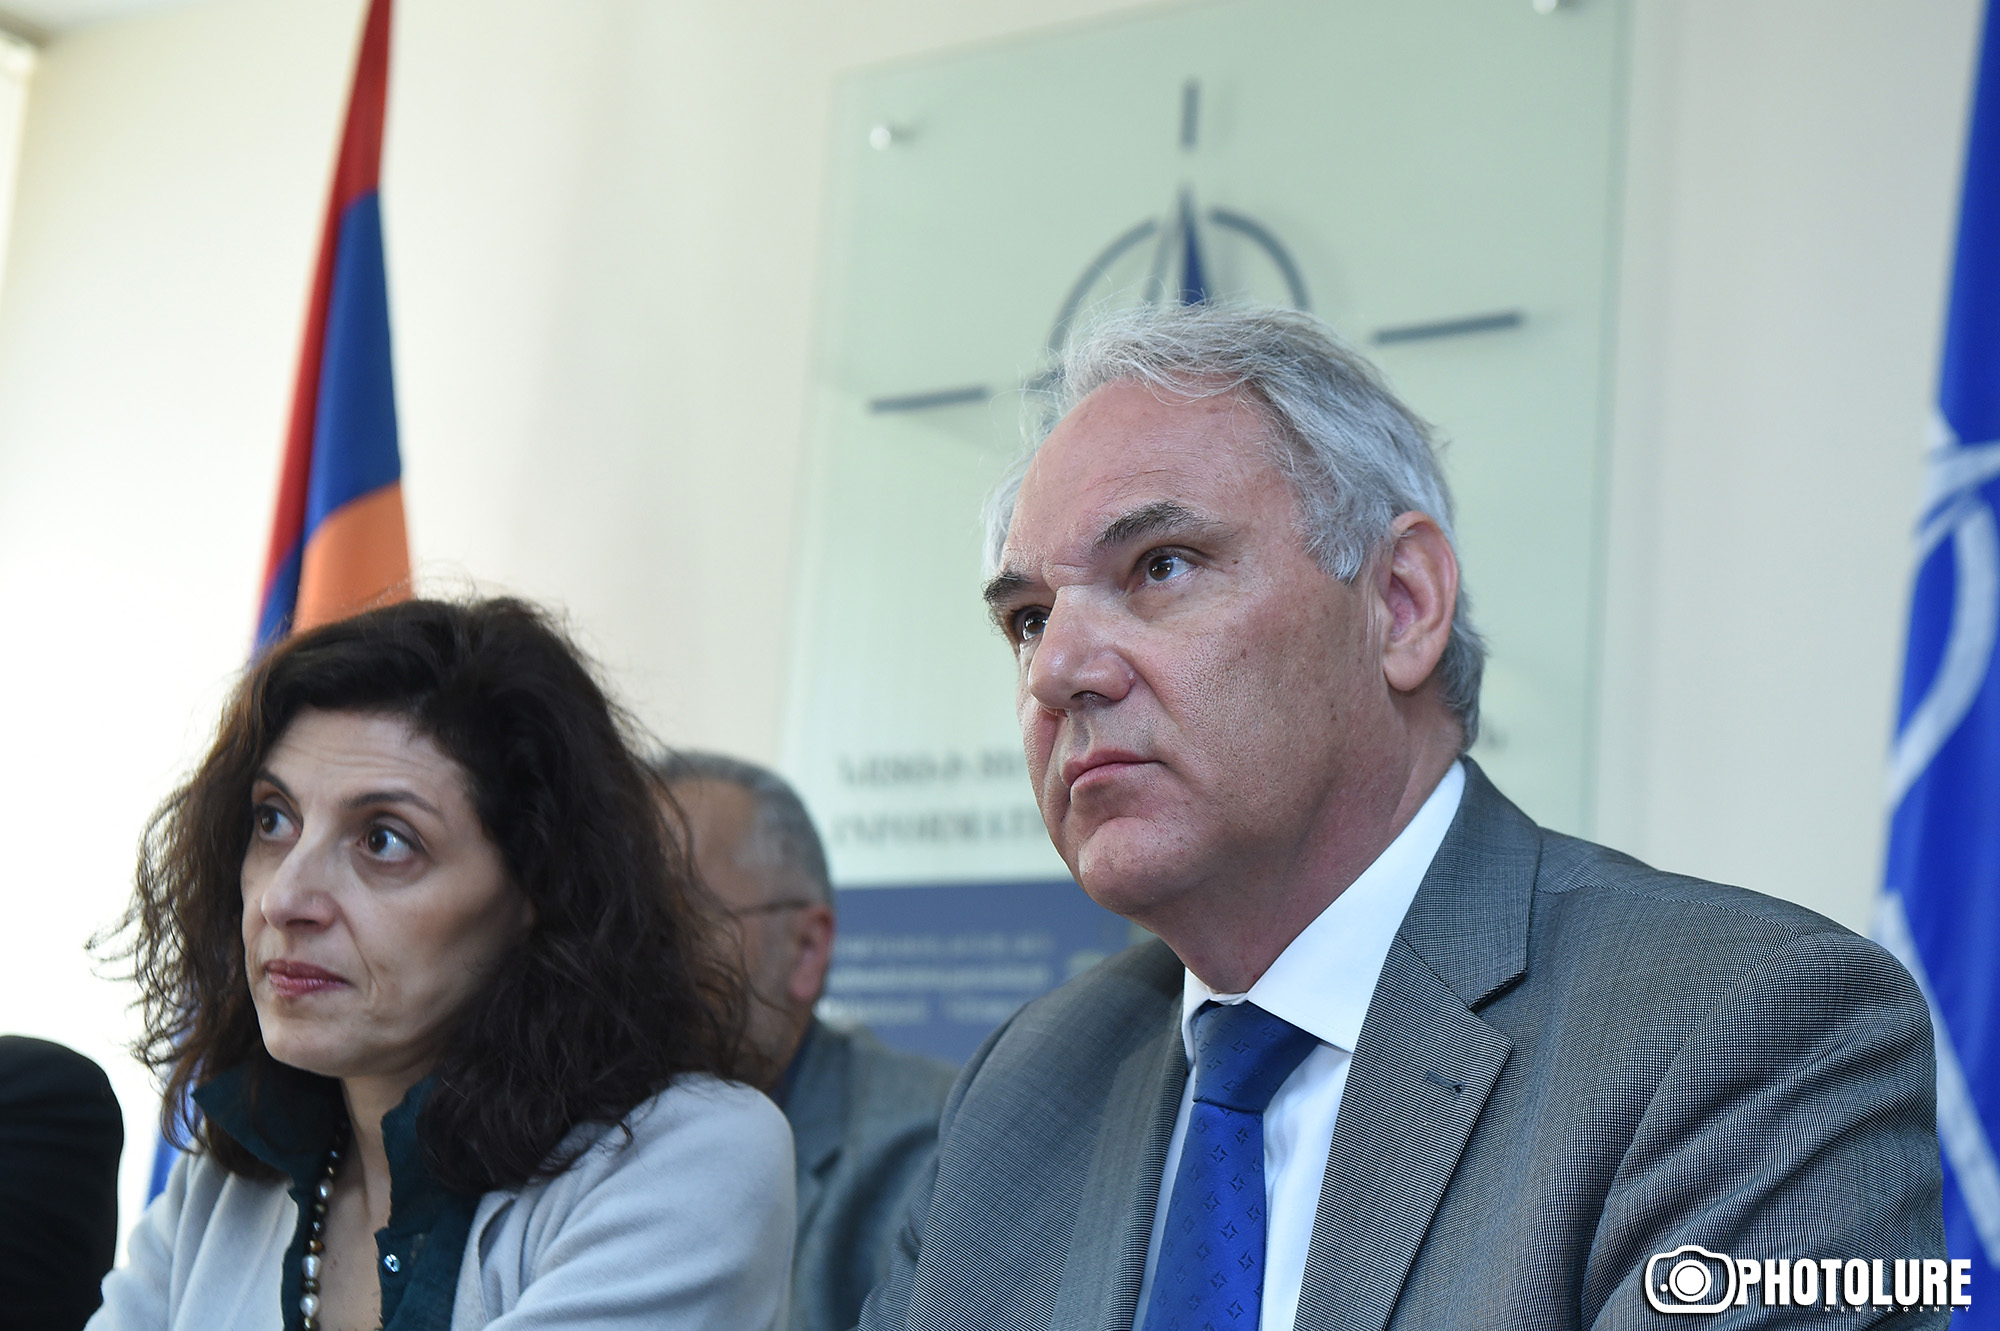 Общество Армении мало информировано о деятельности НАТО - посол Германии